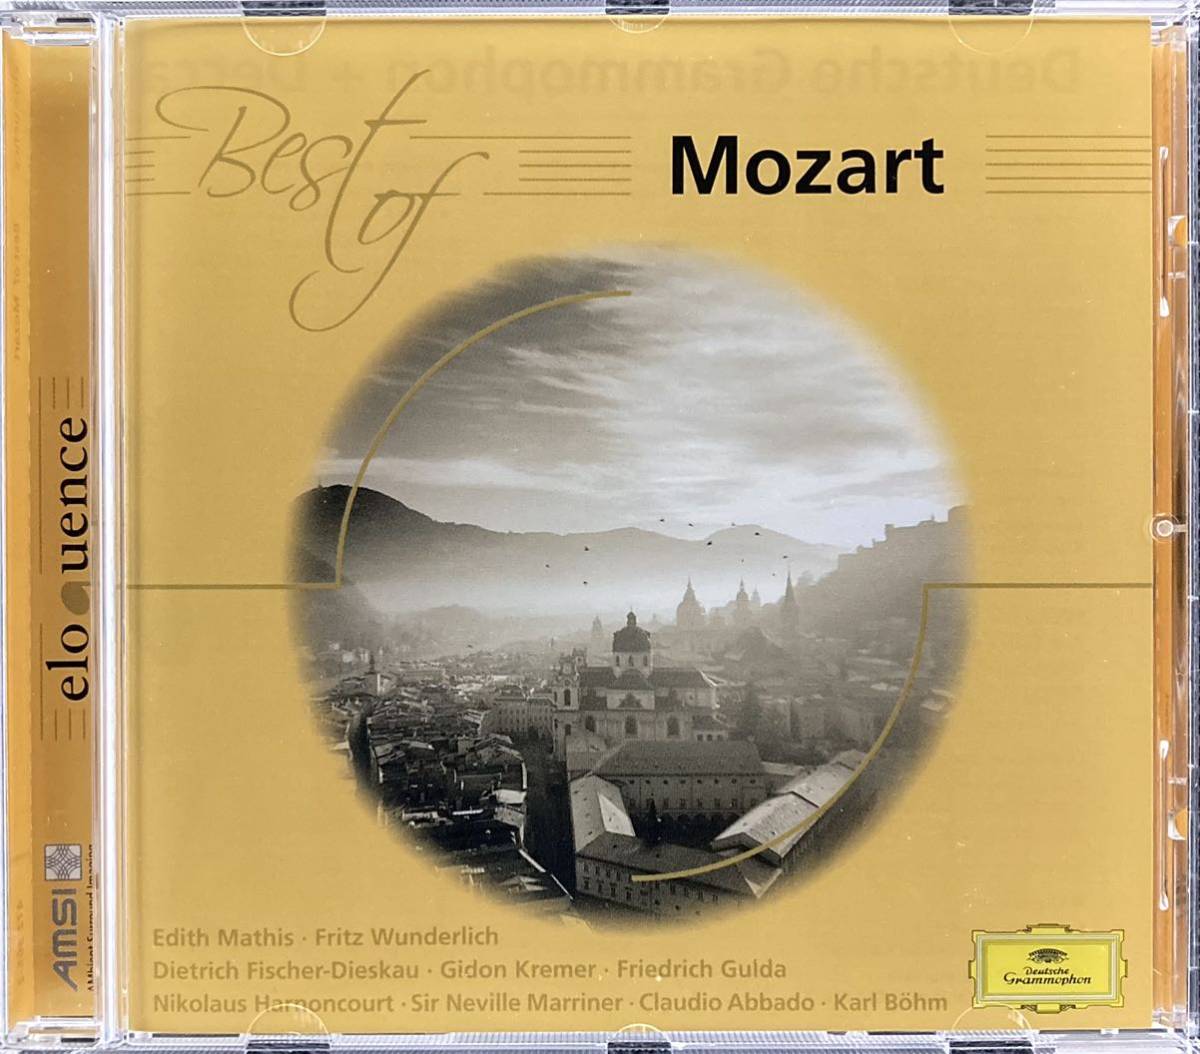 CD/ ベスト・オブ・モーツァルトの画像1